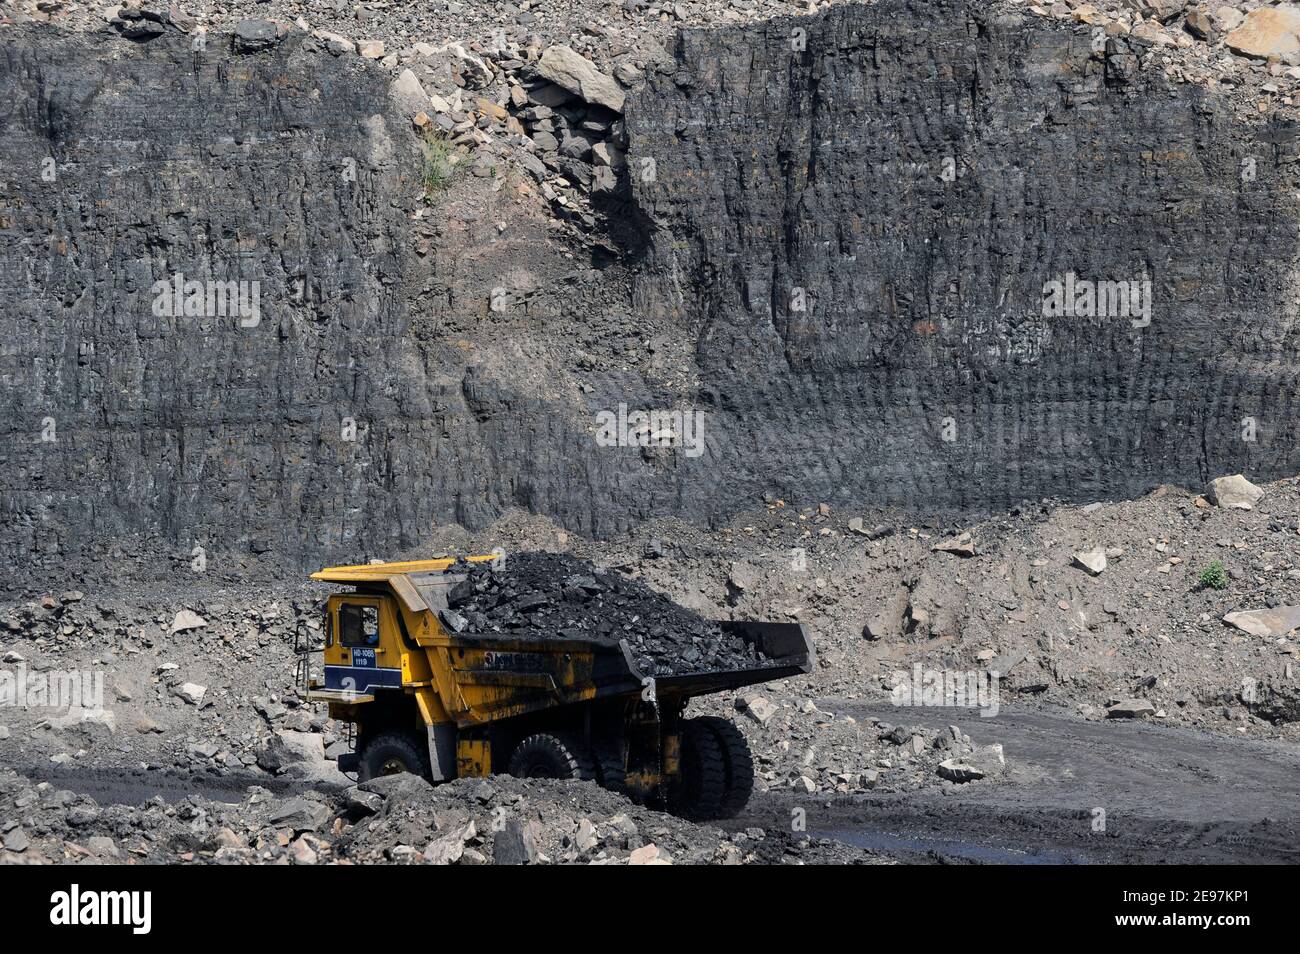 INDIA Dhanbad, estrazione di carbone a getto aperto di BCCL Ltd un'azienda di CARBONE INDIA, grande dumper BEML per il trasporto di carbone dalla miniera / INDIEN Dhanbad , offener Kohle Tagebau von BCCL Ltd. Ein Tochterunternehmen von Coal India Foto Stock